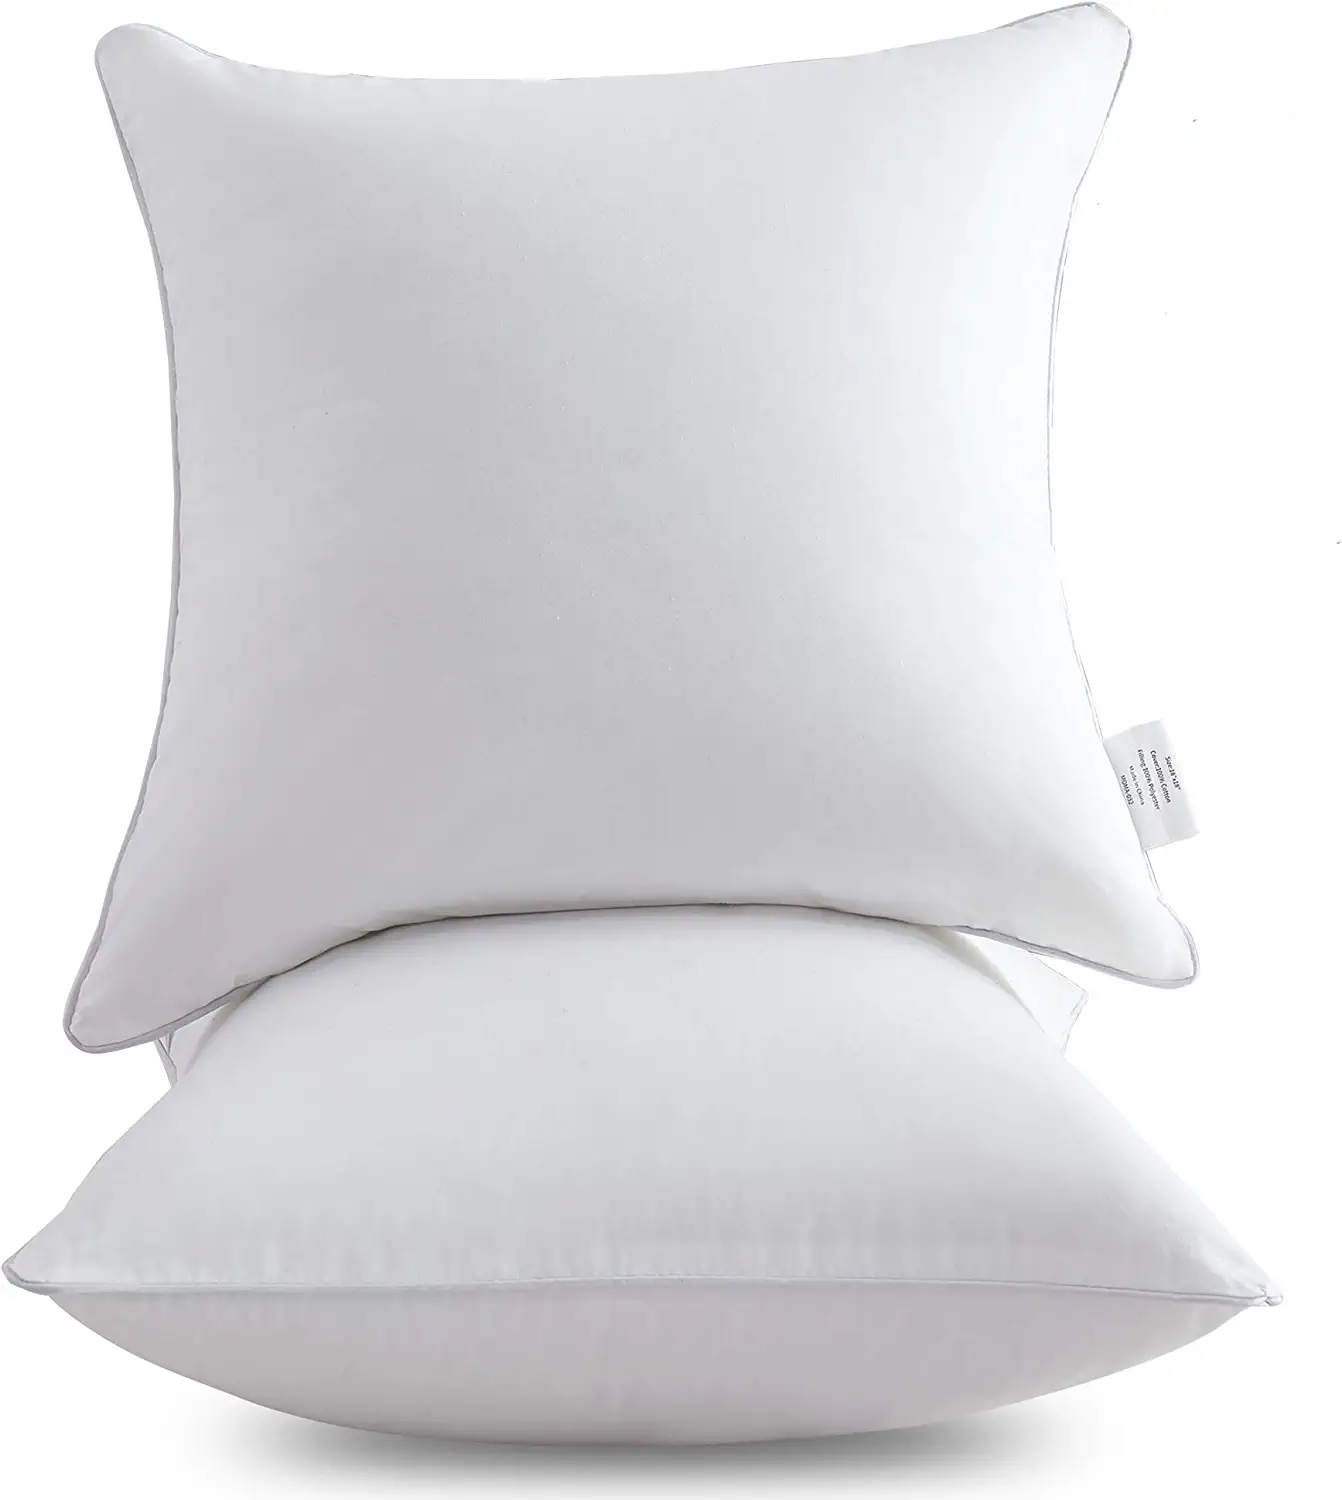 Oubonun Zipper Skin-Friendly Throw Pillow Inserts, 2-Pack